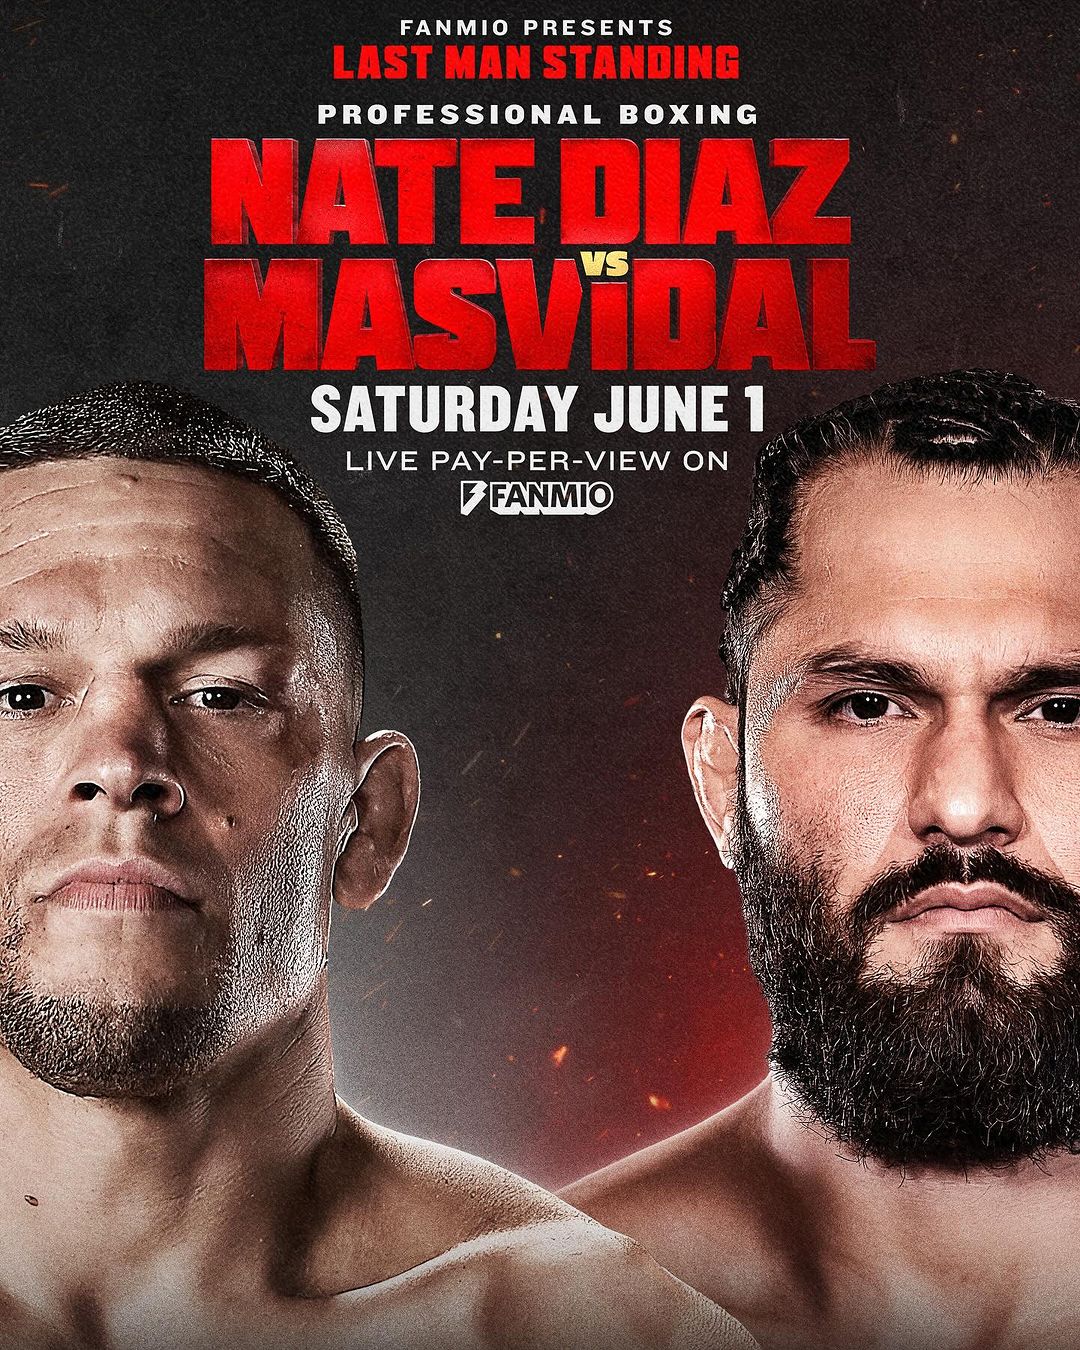 Nate Diaz vs Masvidal